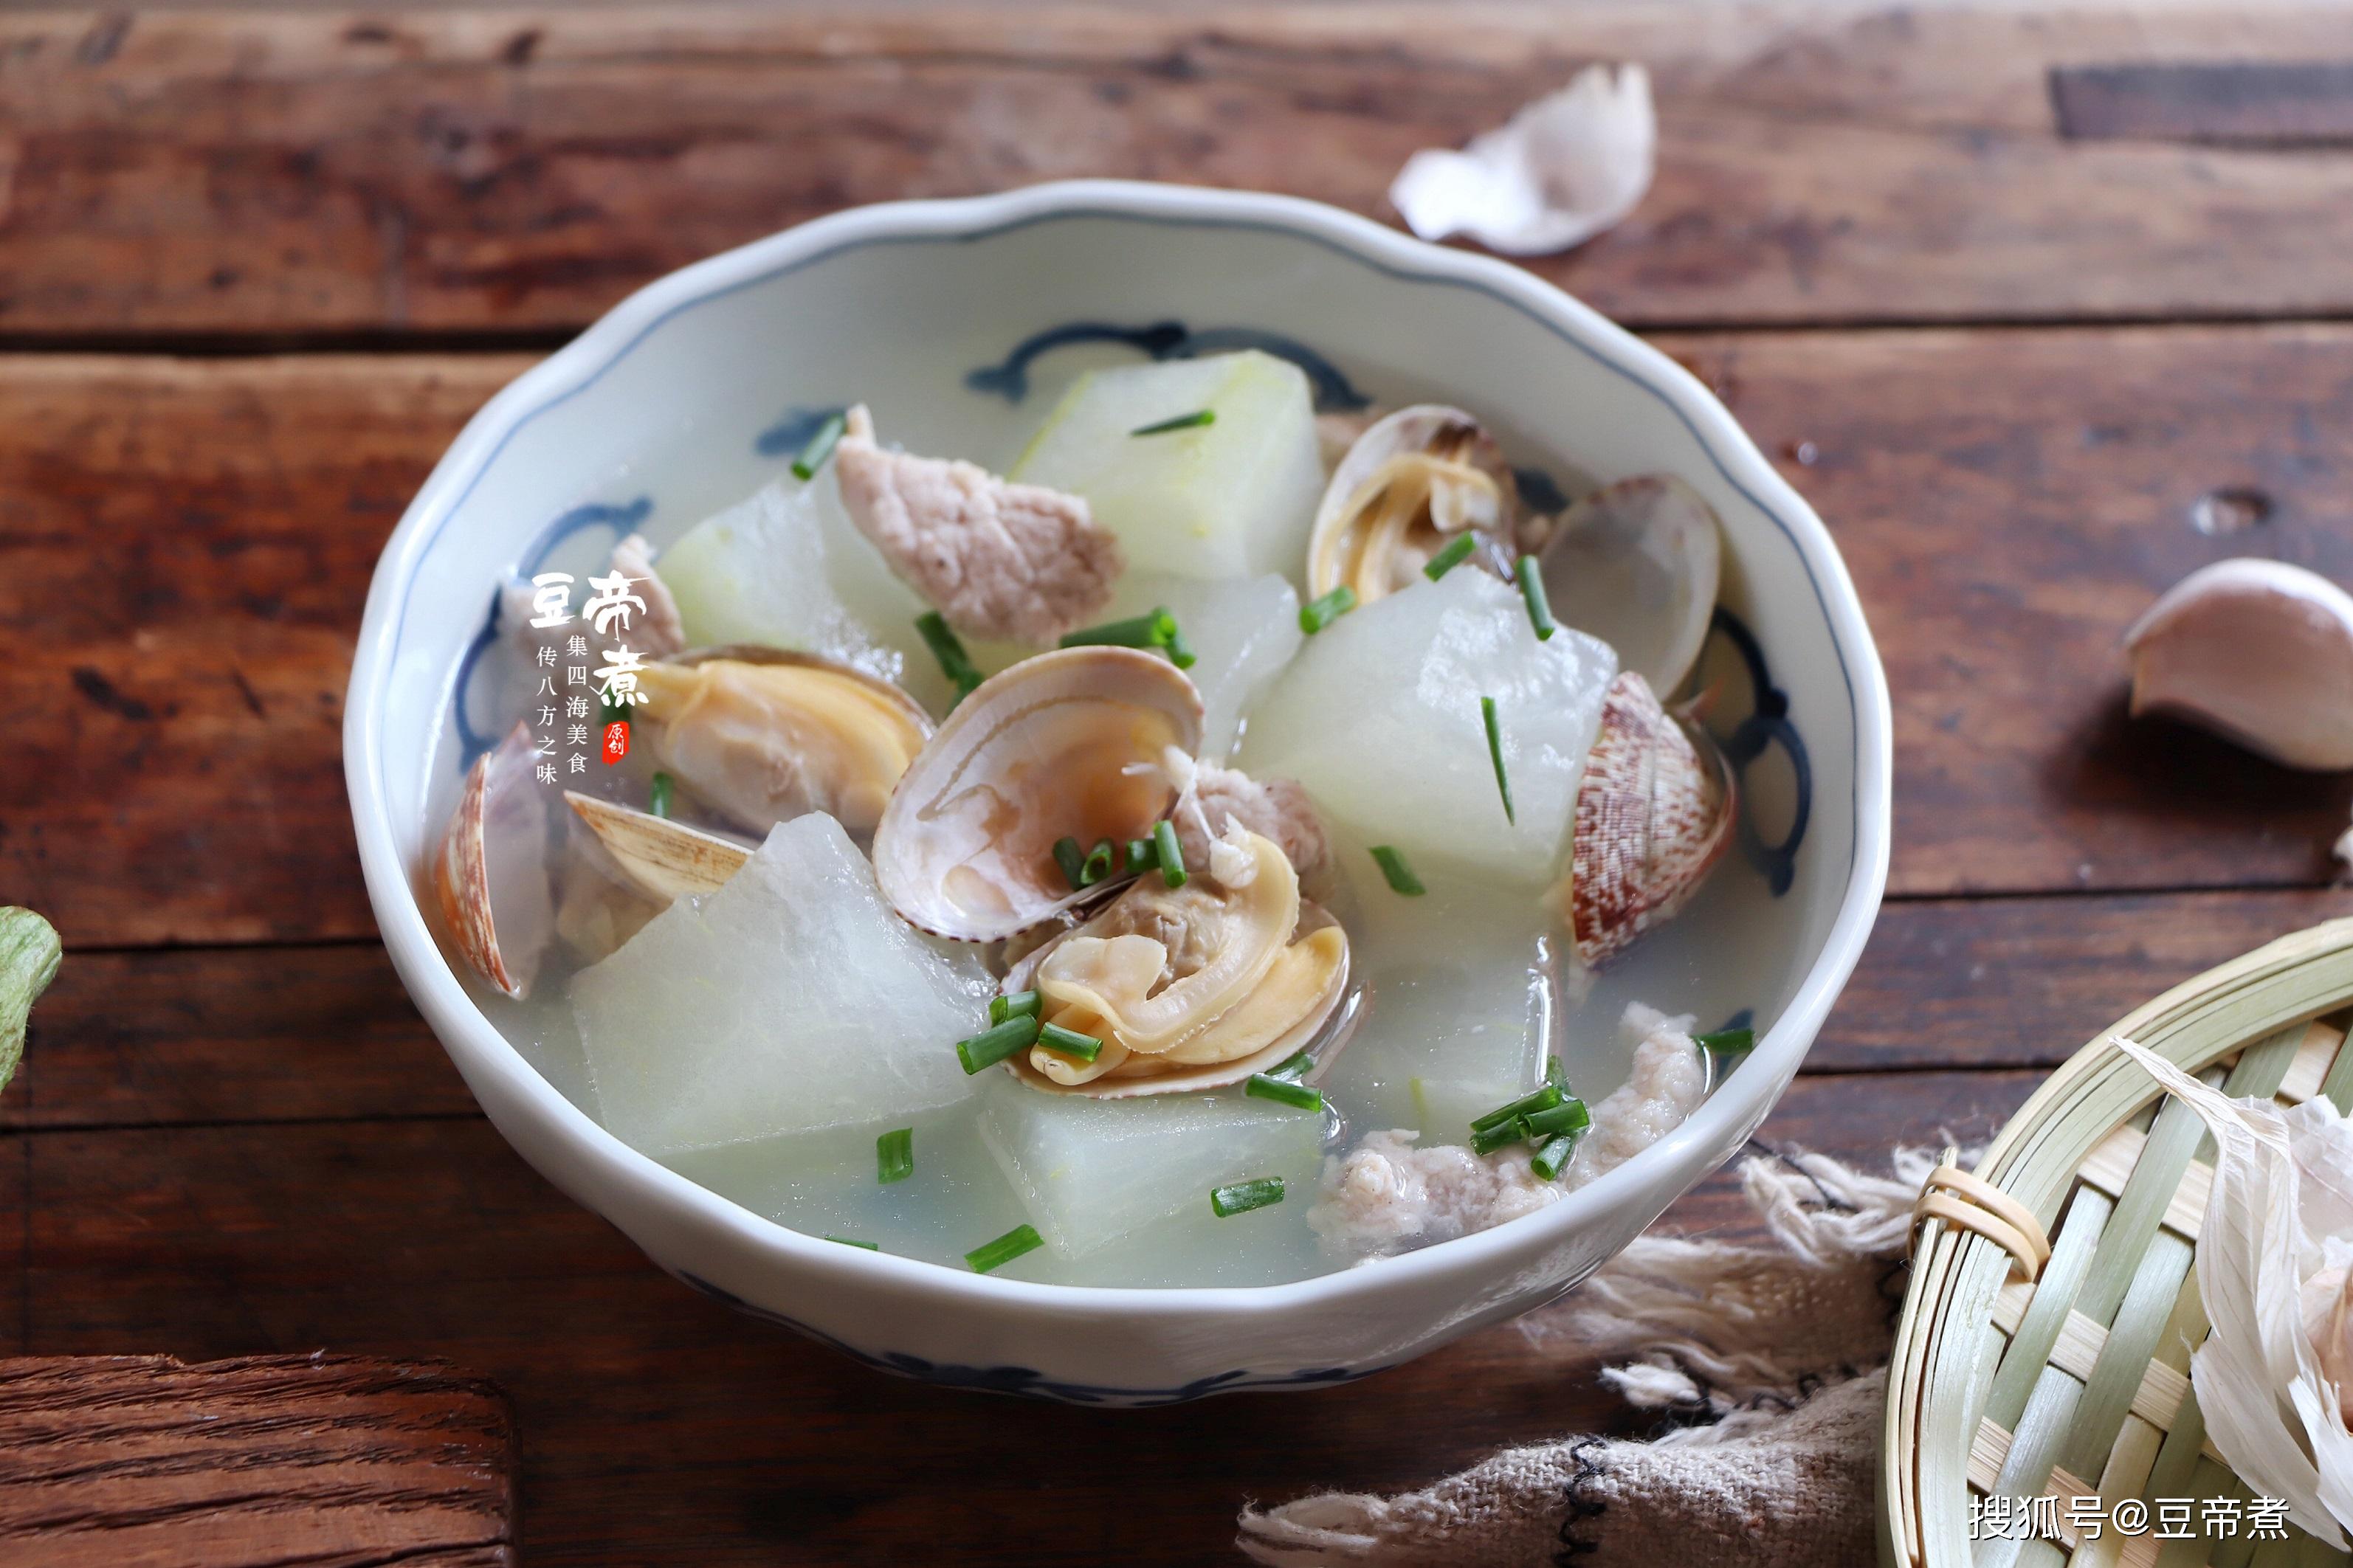 营养的汤来提升改善一下自己和家人的胃口,在这个阶段花蛤比较肥美